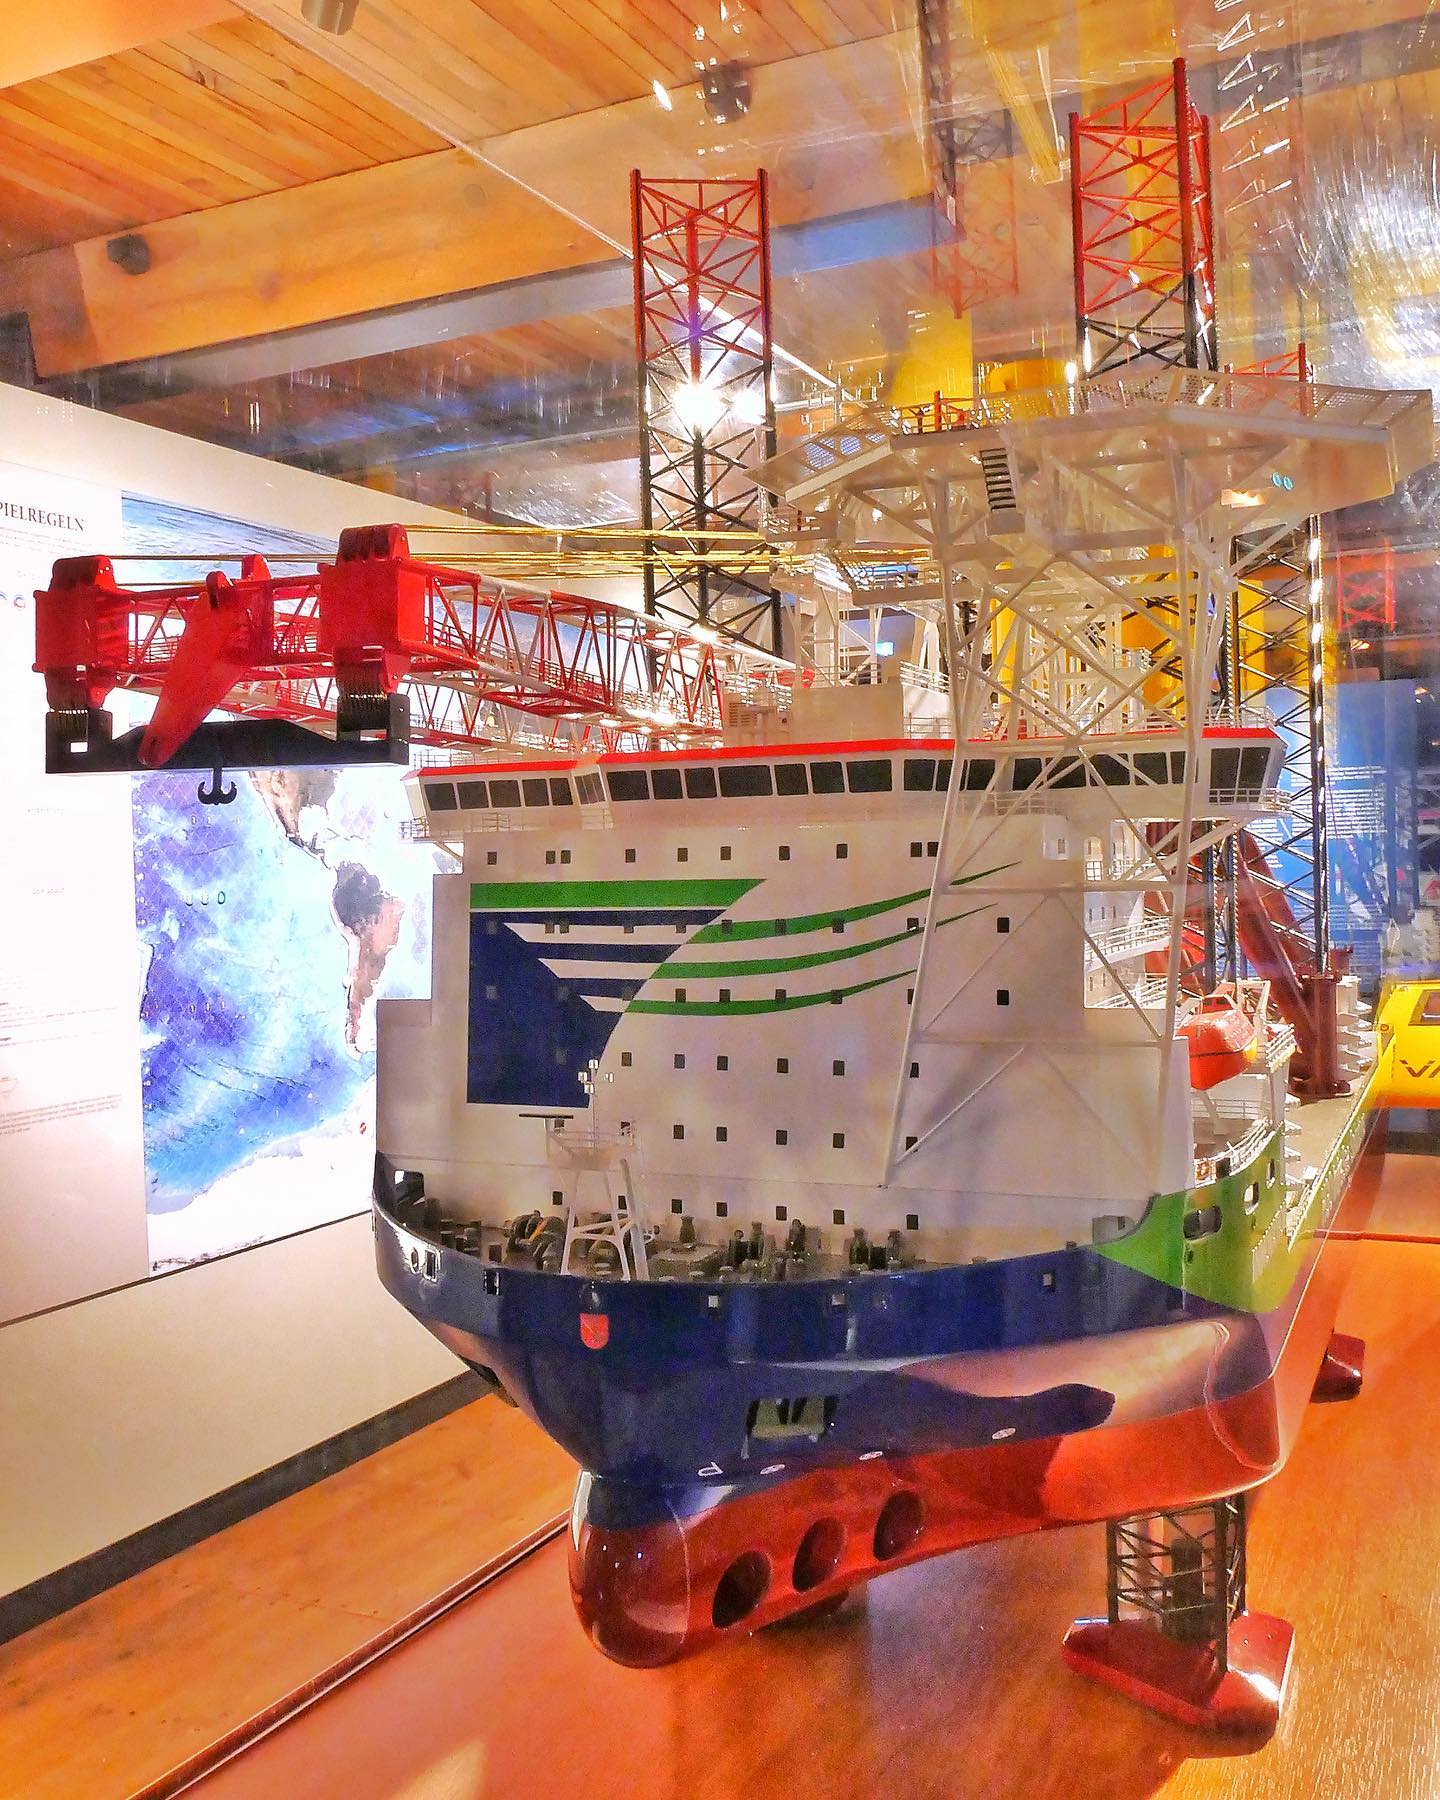 Das Schwerlastkrahnschiff DP2 Innovation (2012). Ihr prächtiges Werftmodell im Maßstab 1:100 ist ein Geschenk von HGO InfraSea Solutions an unsere Sammlung und wird in unserem der Offshore-Industrie gewidmeten Bereich auf Deck 7 des Museums ausgestellt.